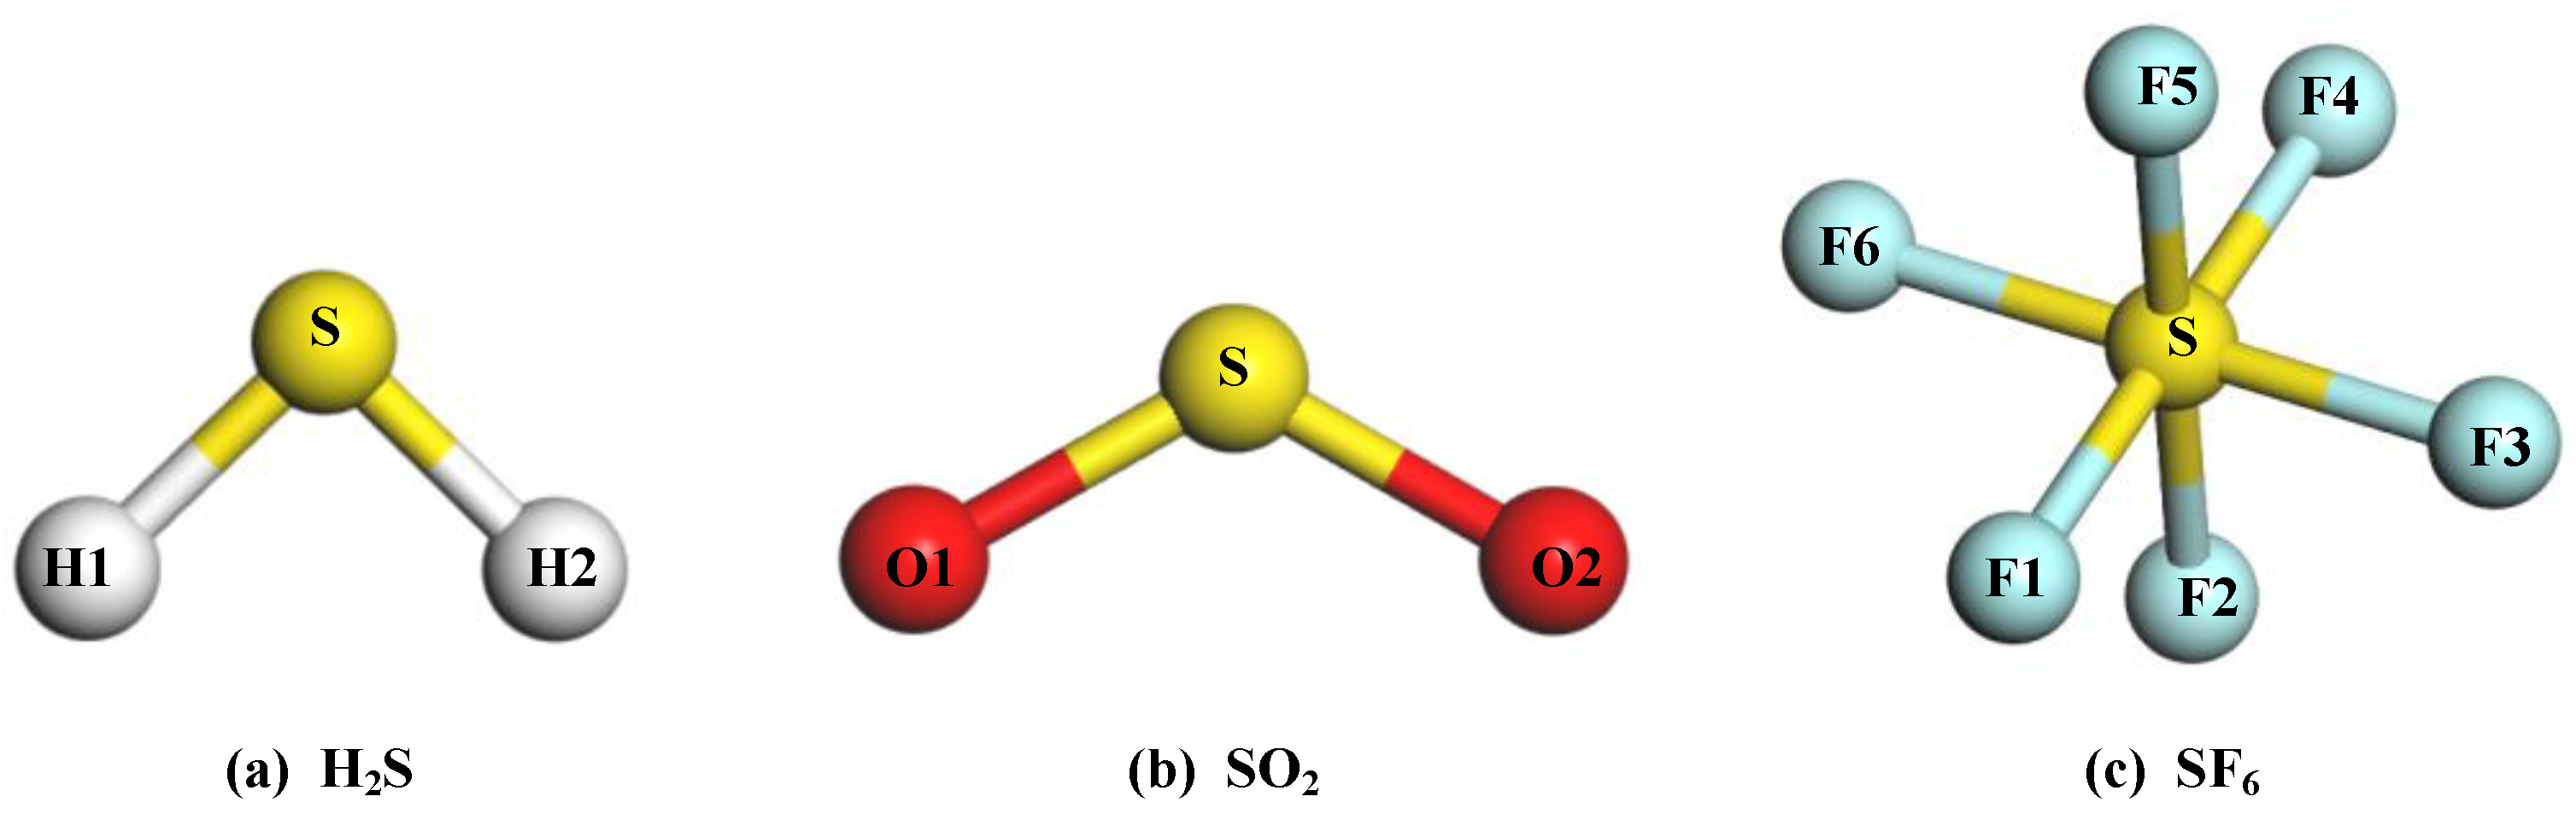 H2se h2te. H2s строение молекулы. Геометрическая форма молекулы h2s. Как выглядит молекула h2s. Геометрическая формула молекула so2.